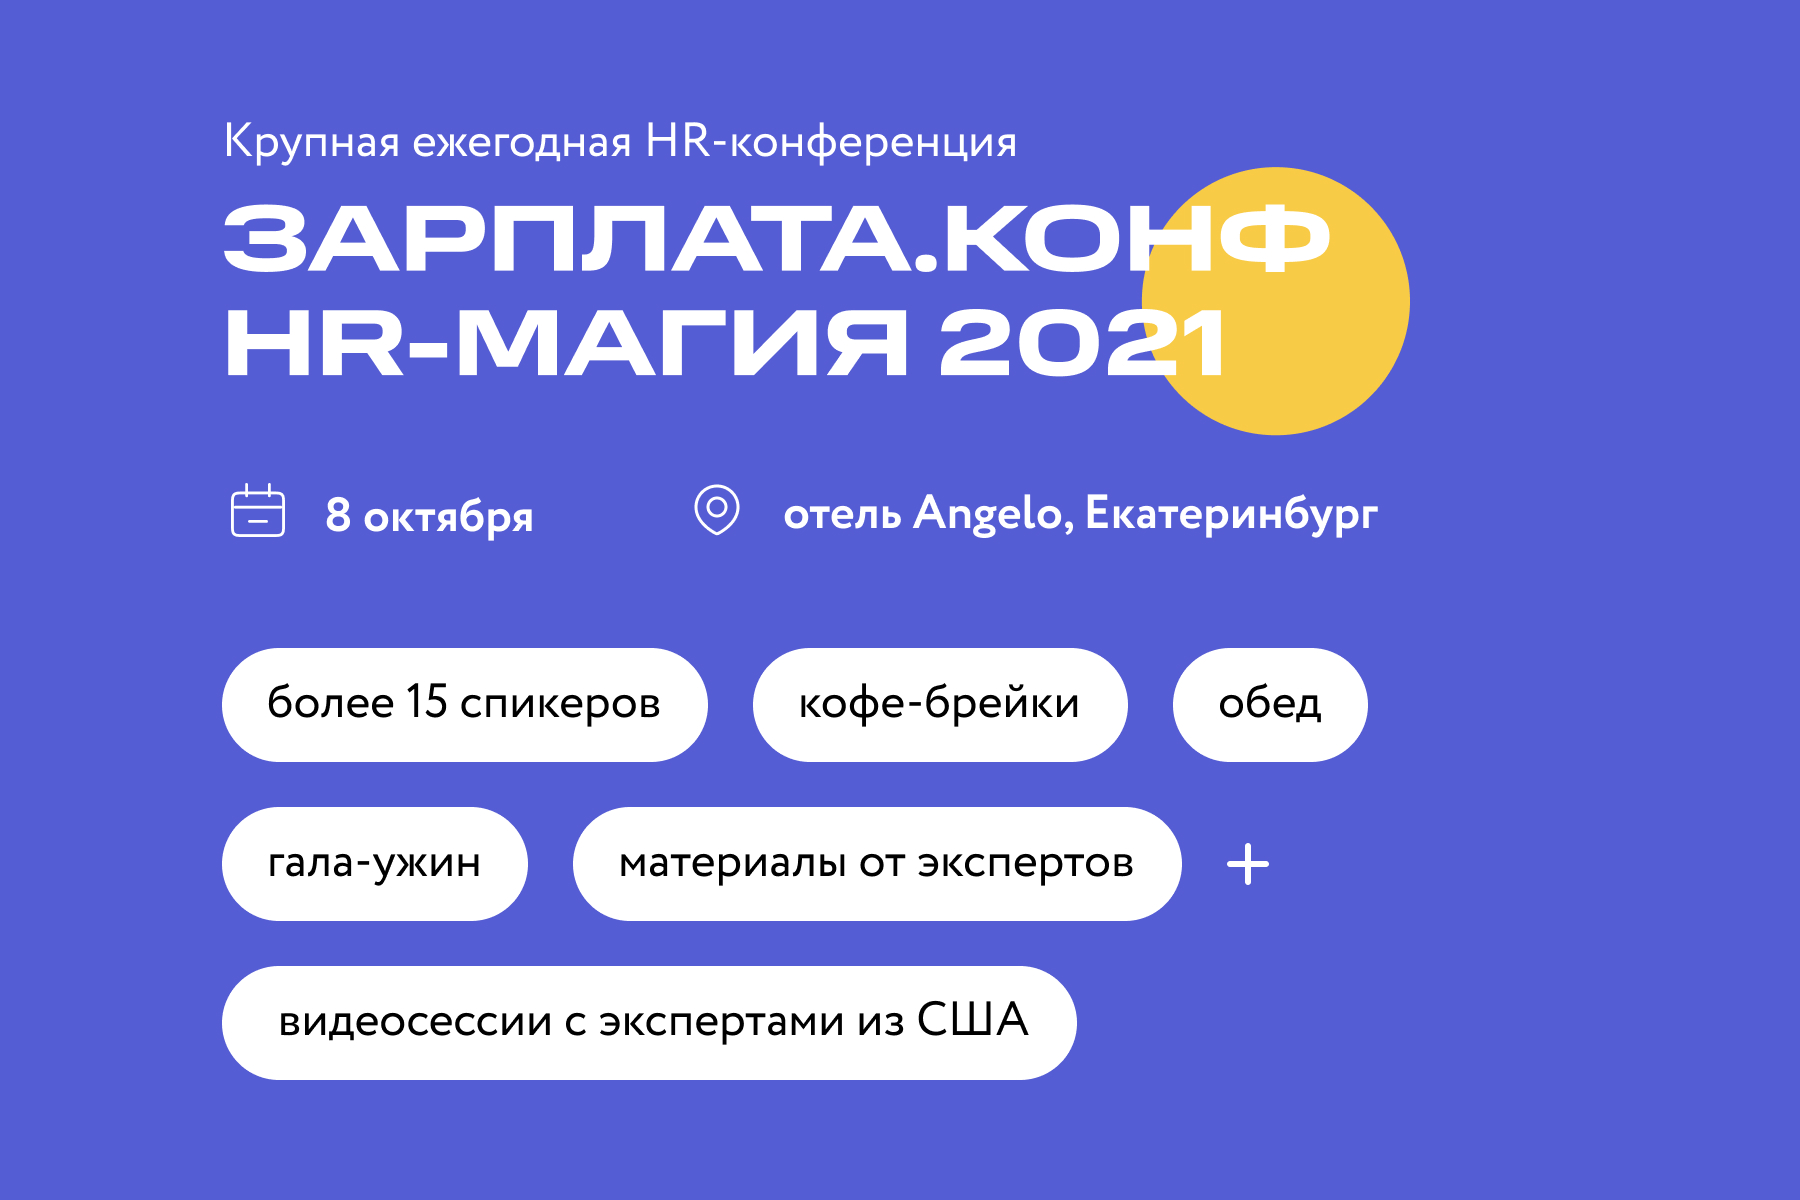 HR-Магия 2021: главная уральская конференция о трендах и инновациях в сфере HR пройдет в Екатеринбурге